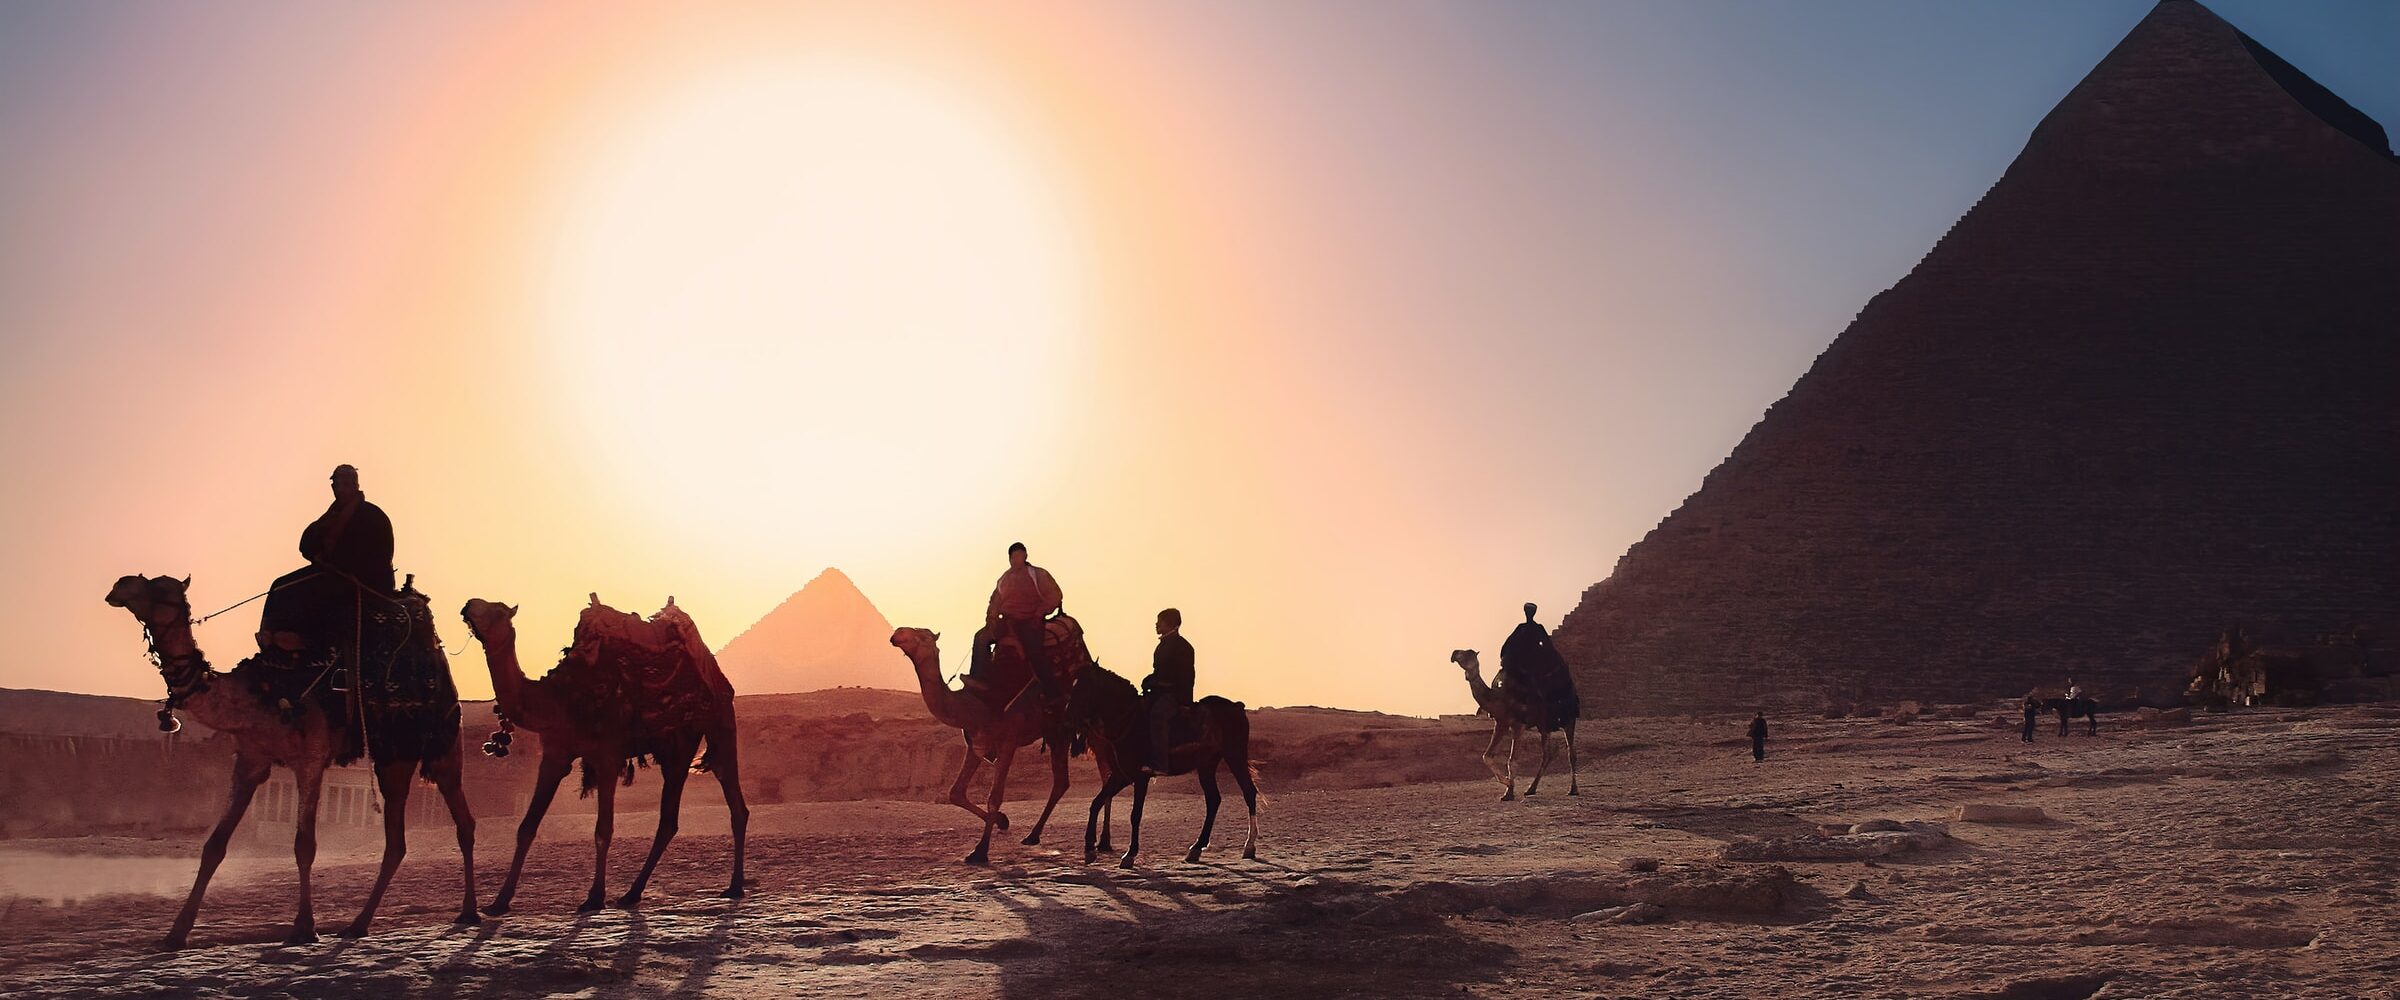 piramides-de-giza-egipto-visitas-imperdibles